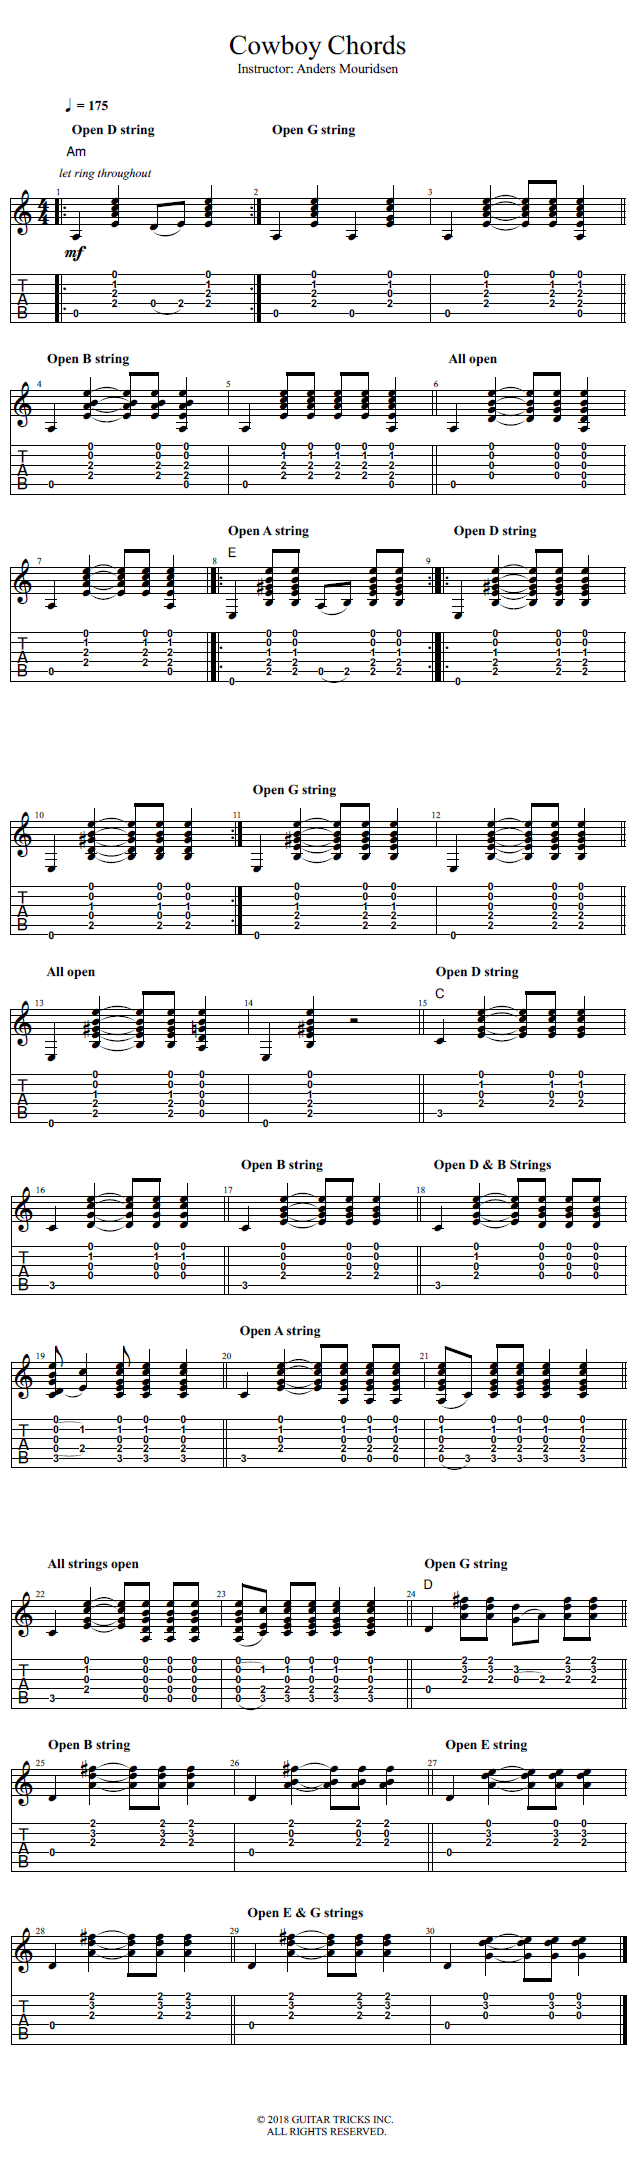 Cowboy Chords song notation